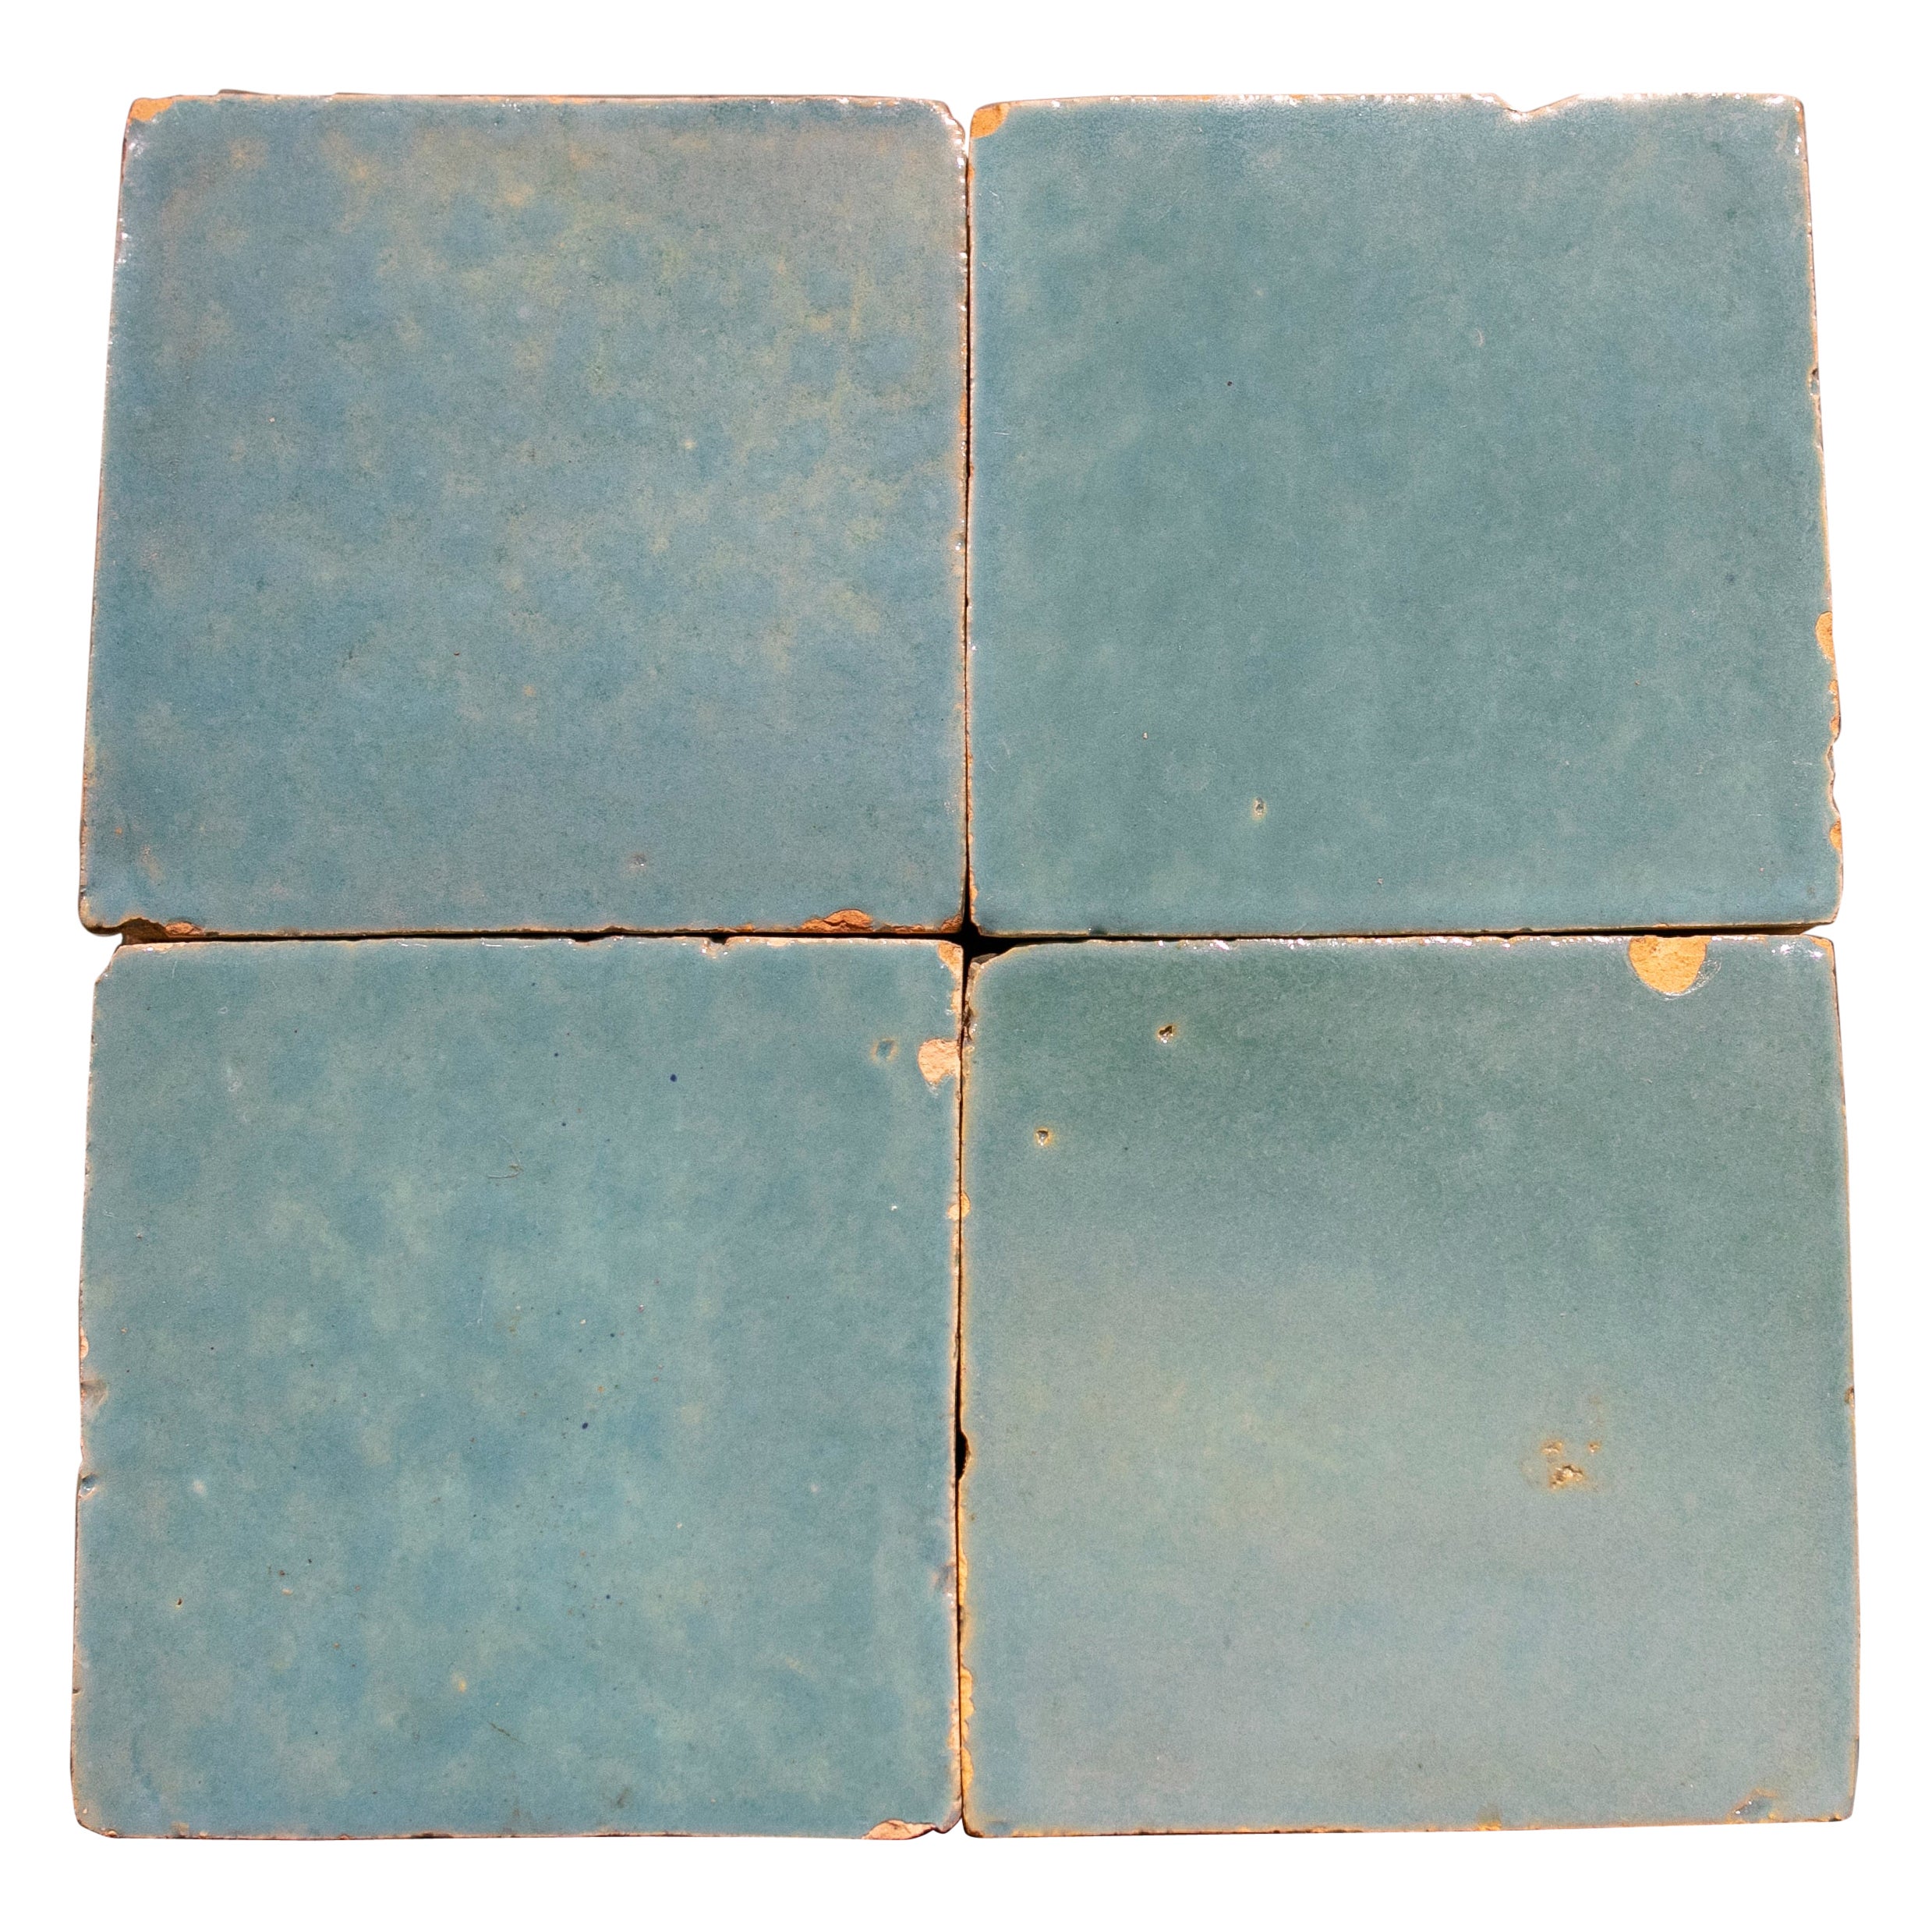 Handmade Glazed Zelige Tile in Light Blue Colour For Sale